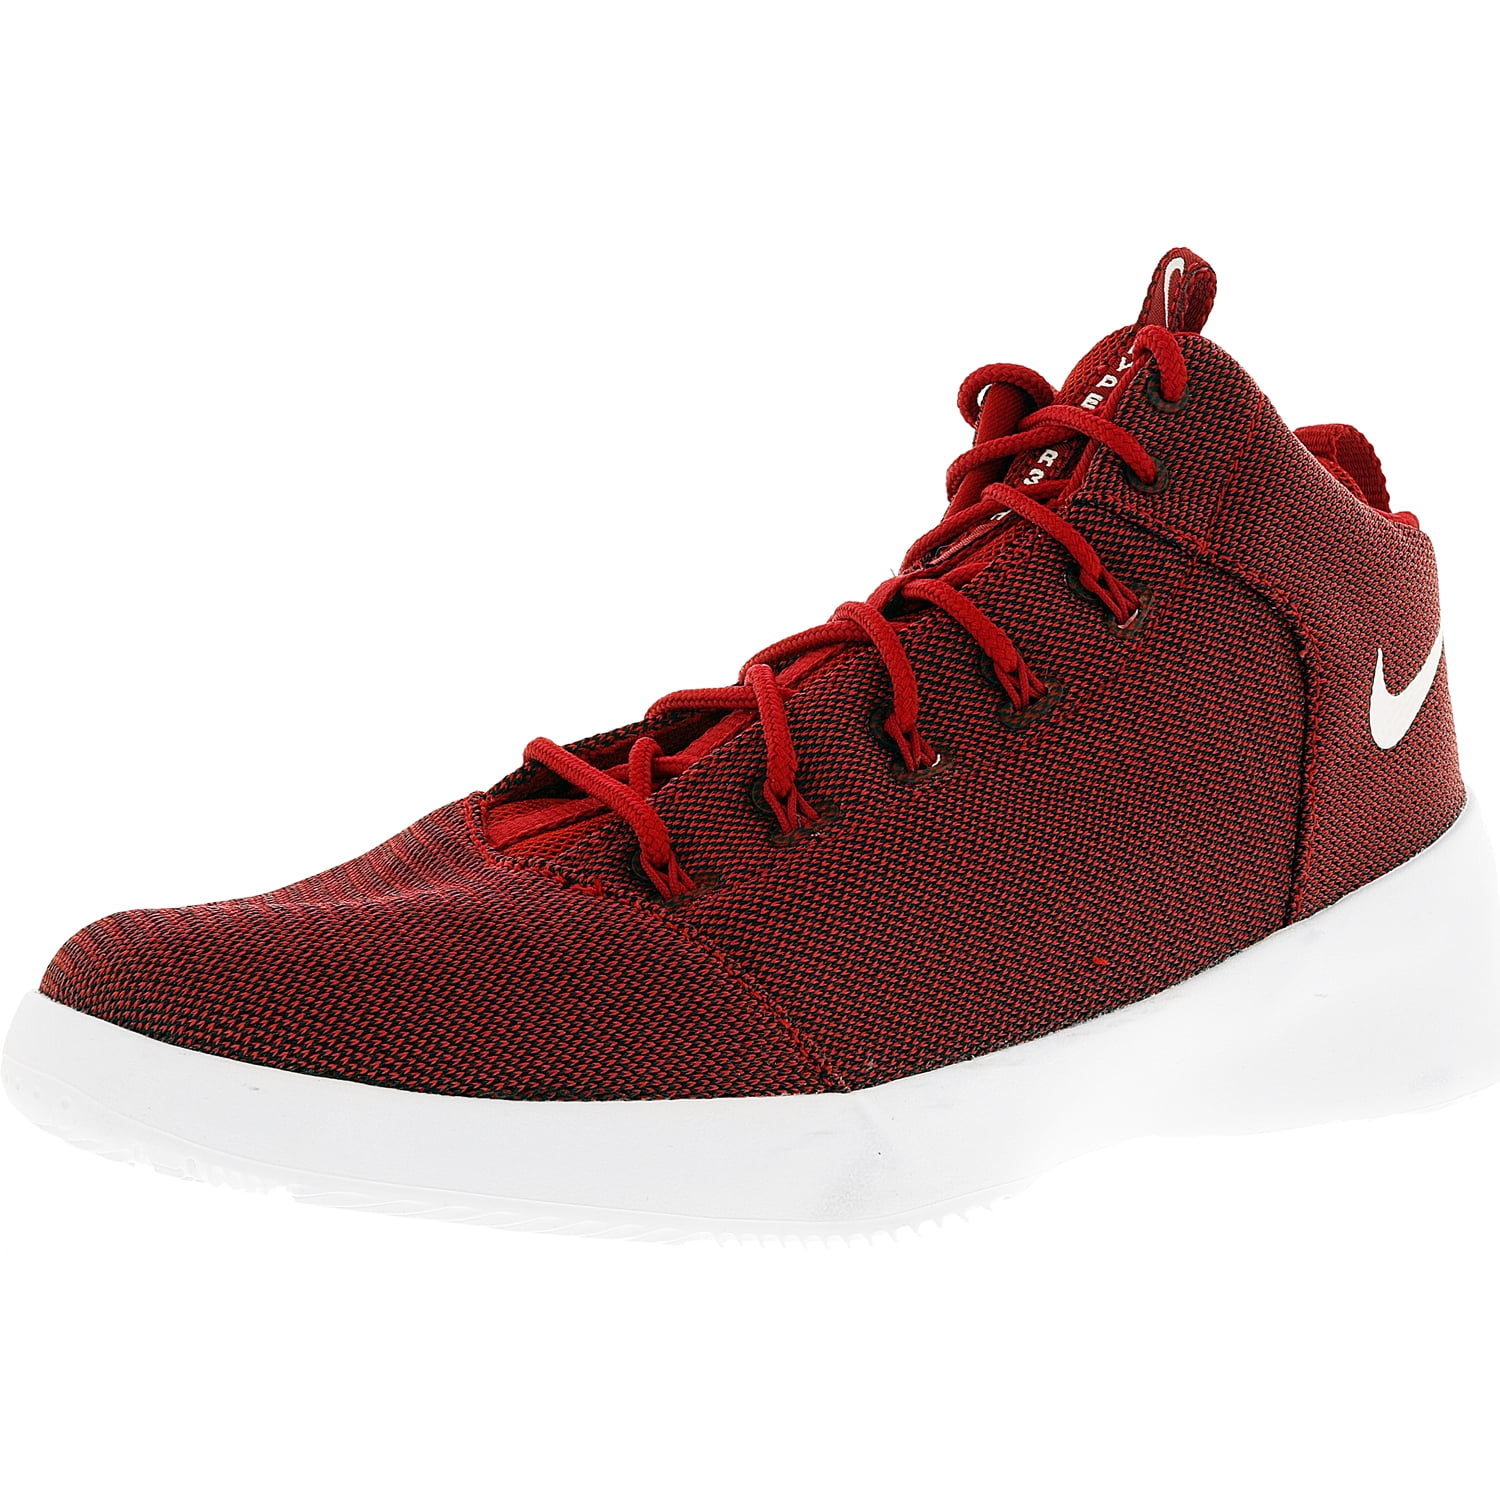 G beschaving Hardheid Nike Men's Hyperfr3Sh Red/White Ankle-High Fabric Fashion Sneaker - 11M -  Walmart.com